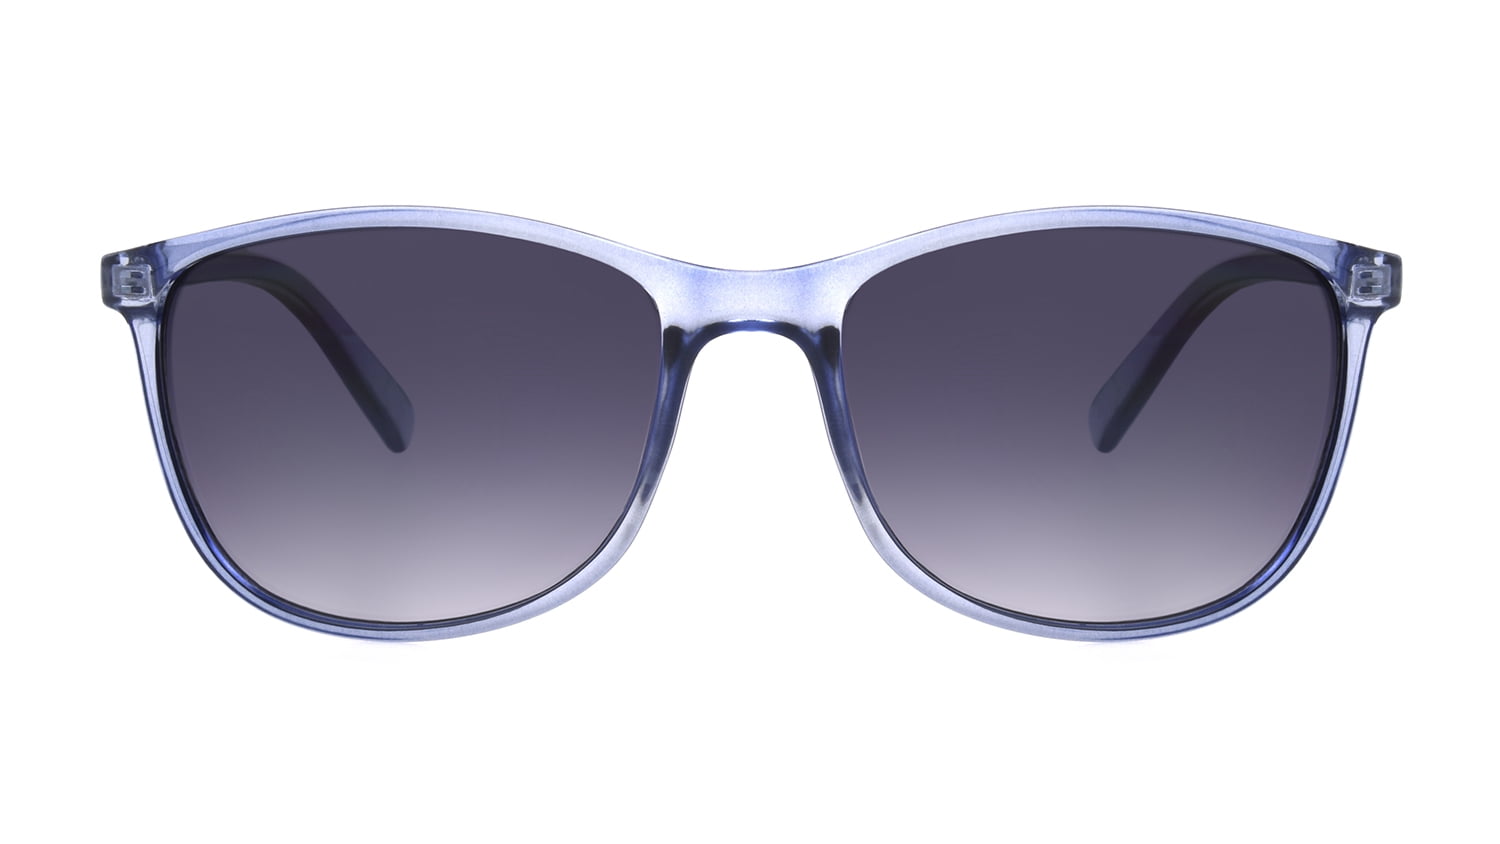 Foster Grant Women's Square Purple Sunglasses